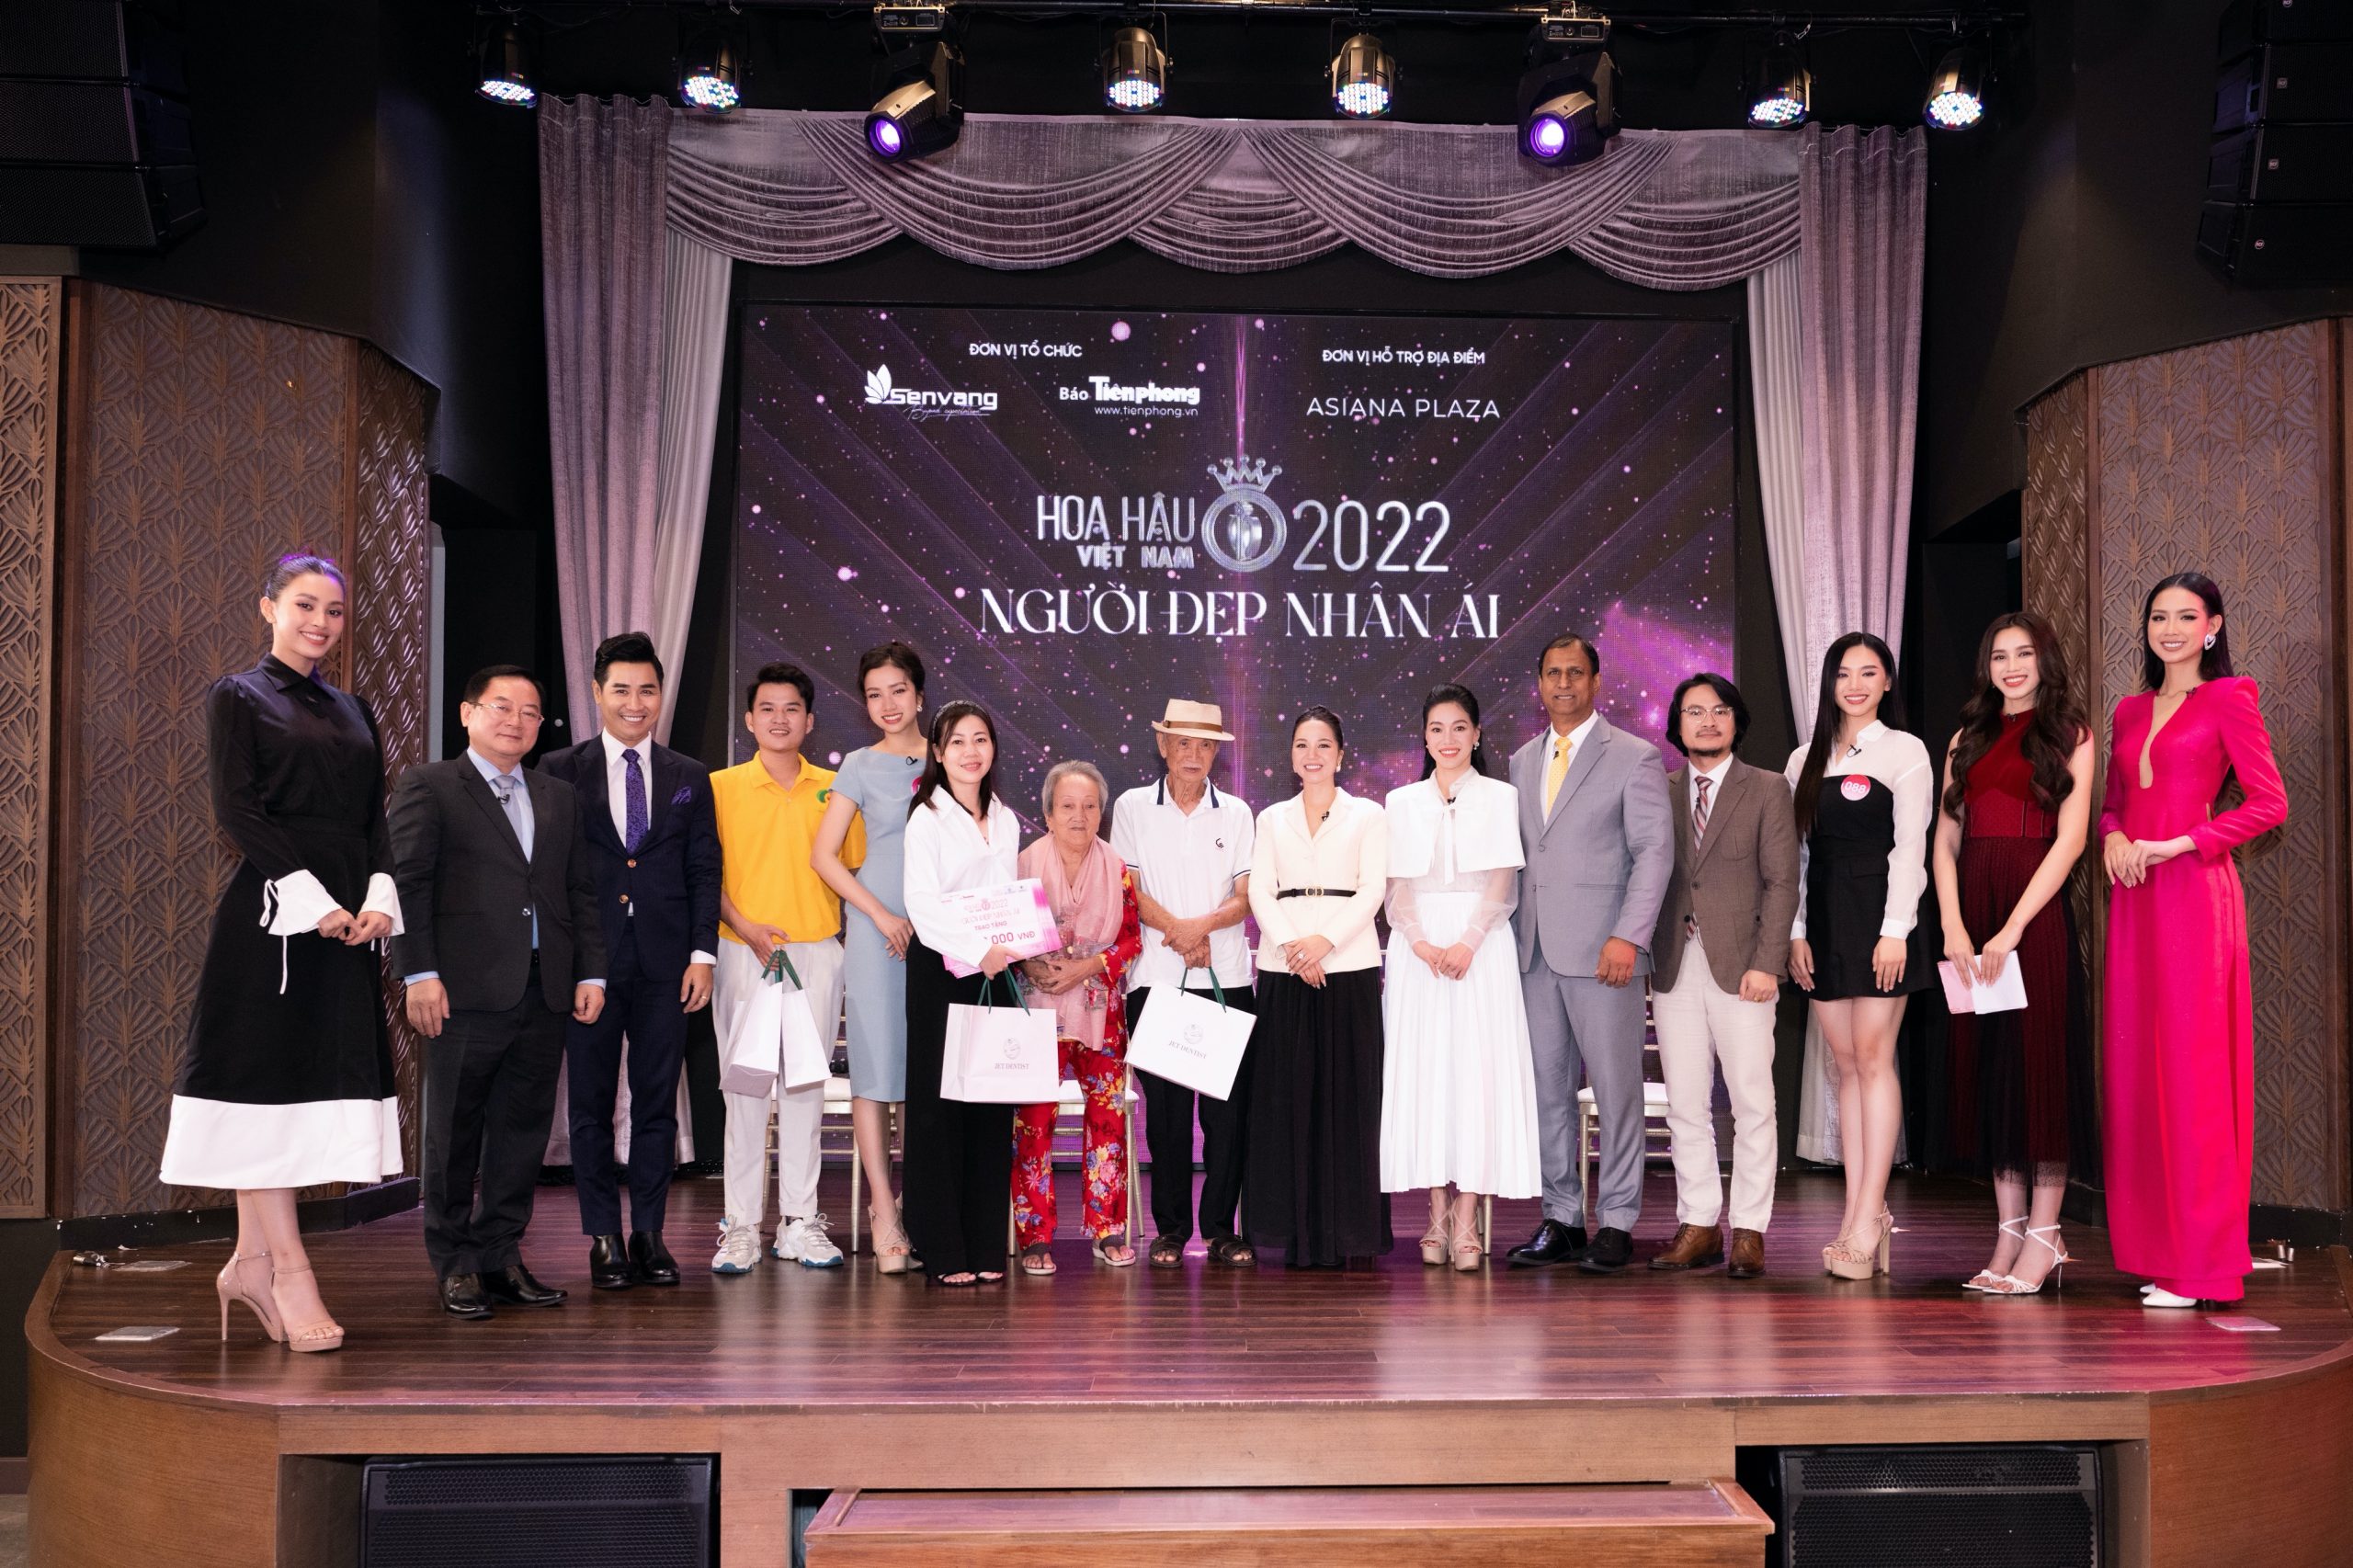 Hoa hậu Việt Nam 2022: Cụ già đoàn tụ gia đình nhờ Người đẹp Nhân ái